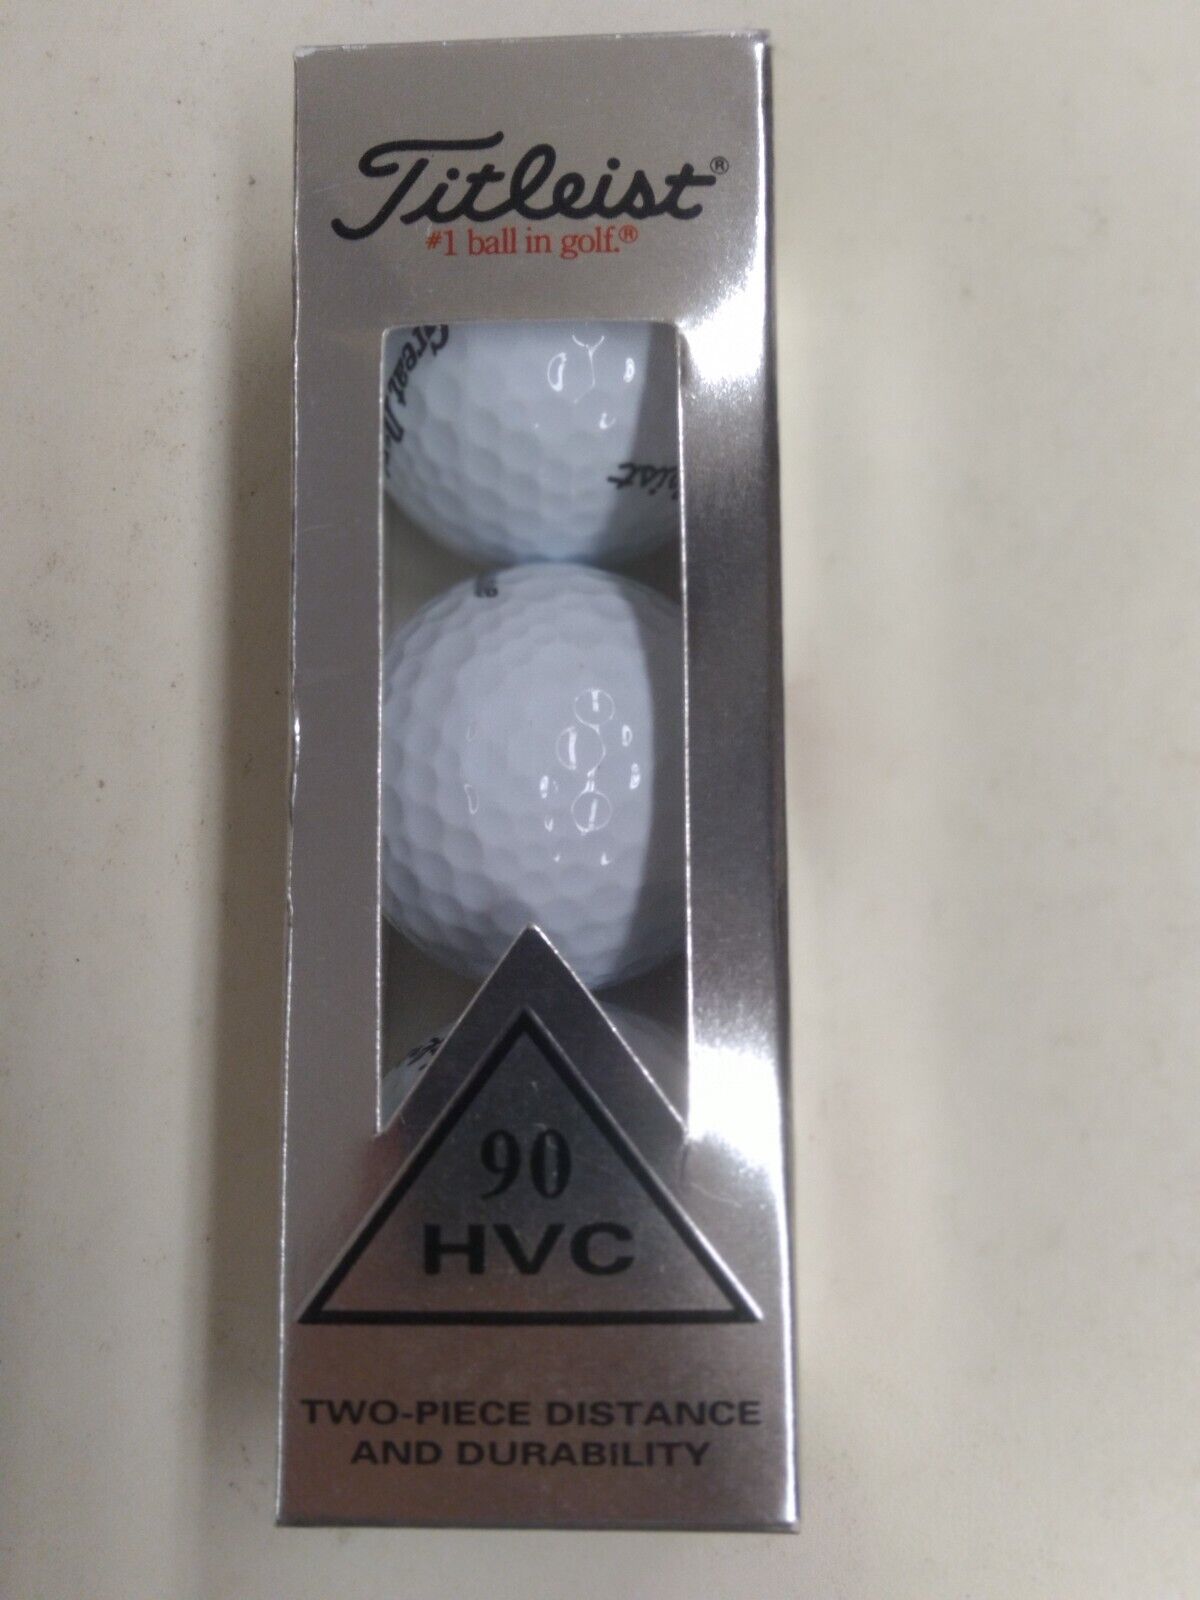 Titleist 90 HVC Box of 3 Golf Balls # 1 Ball